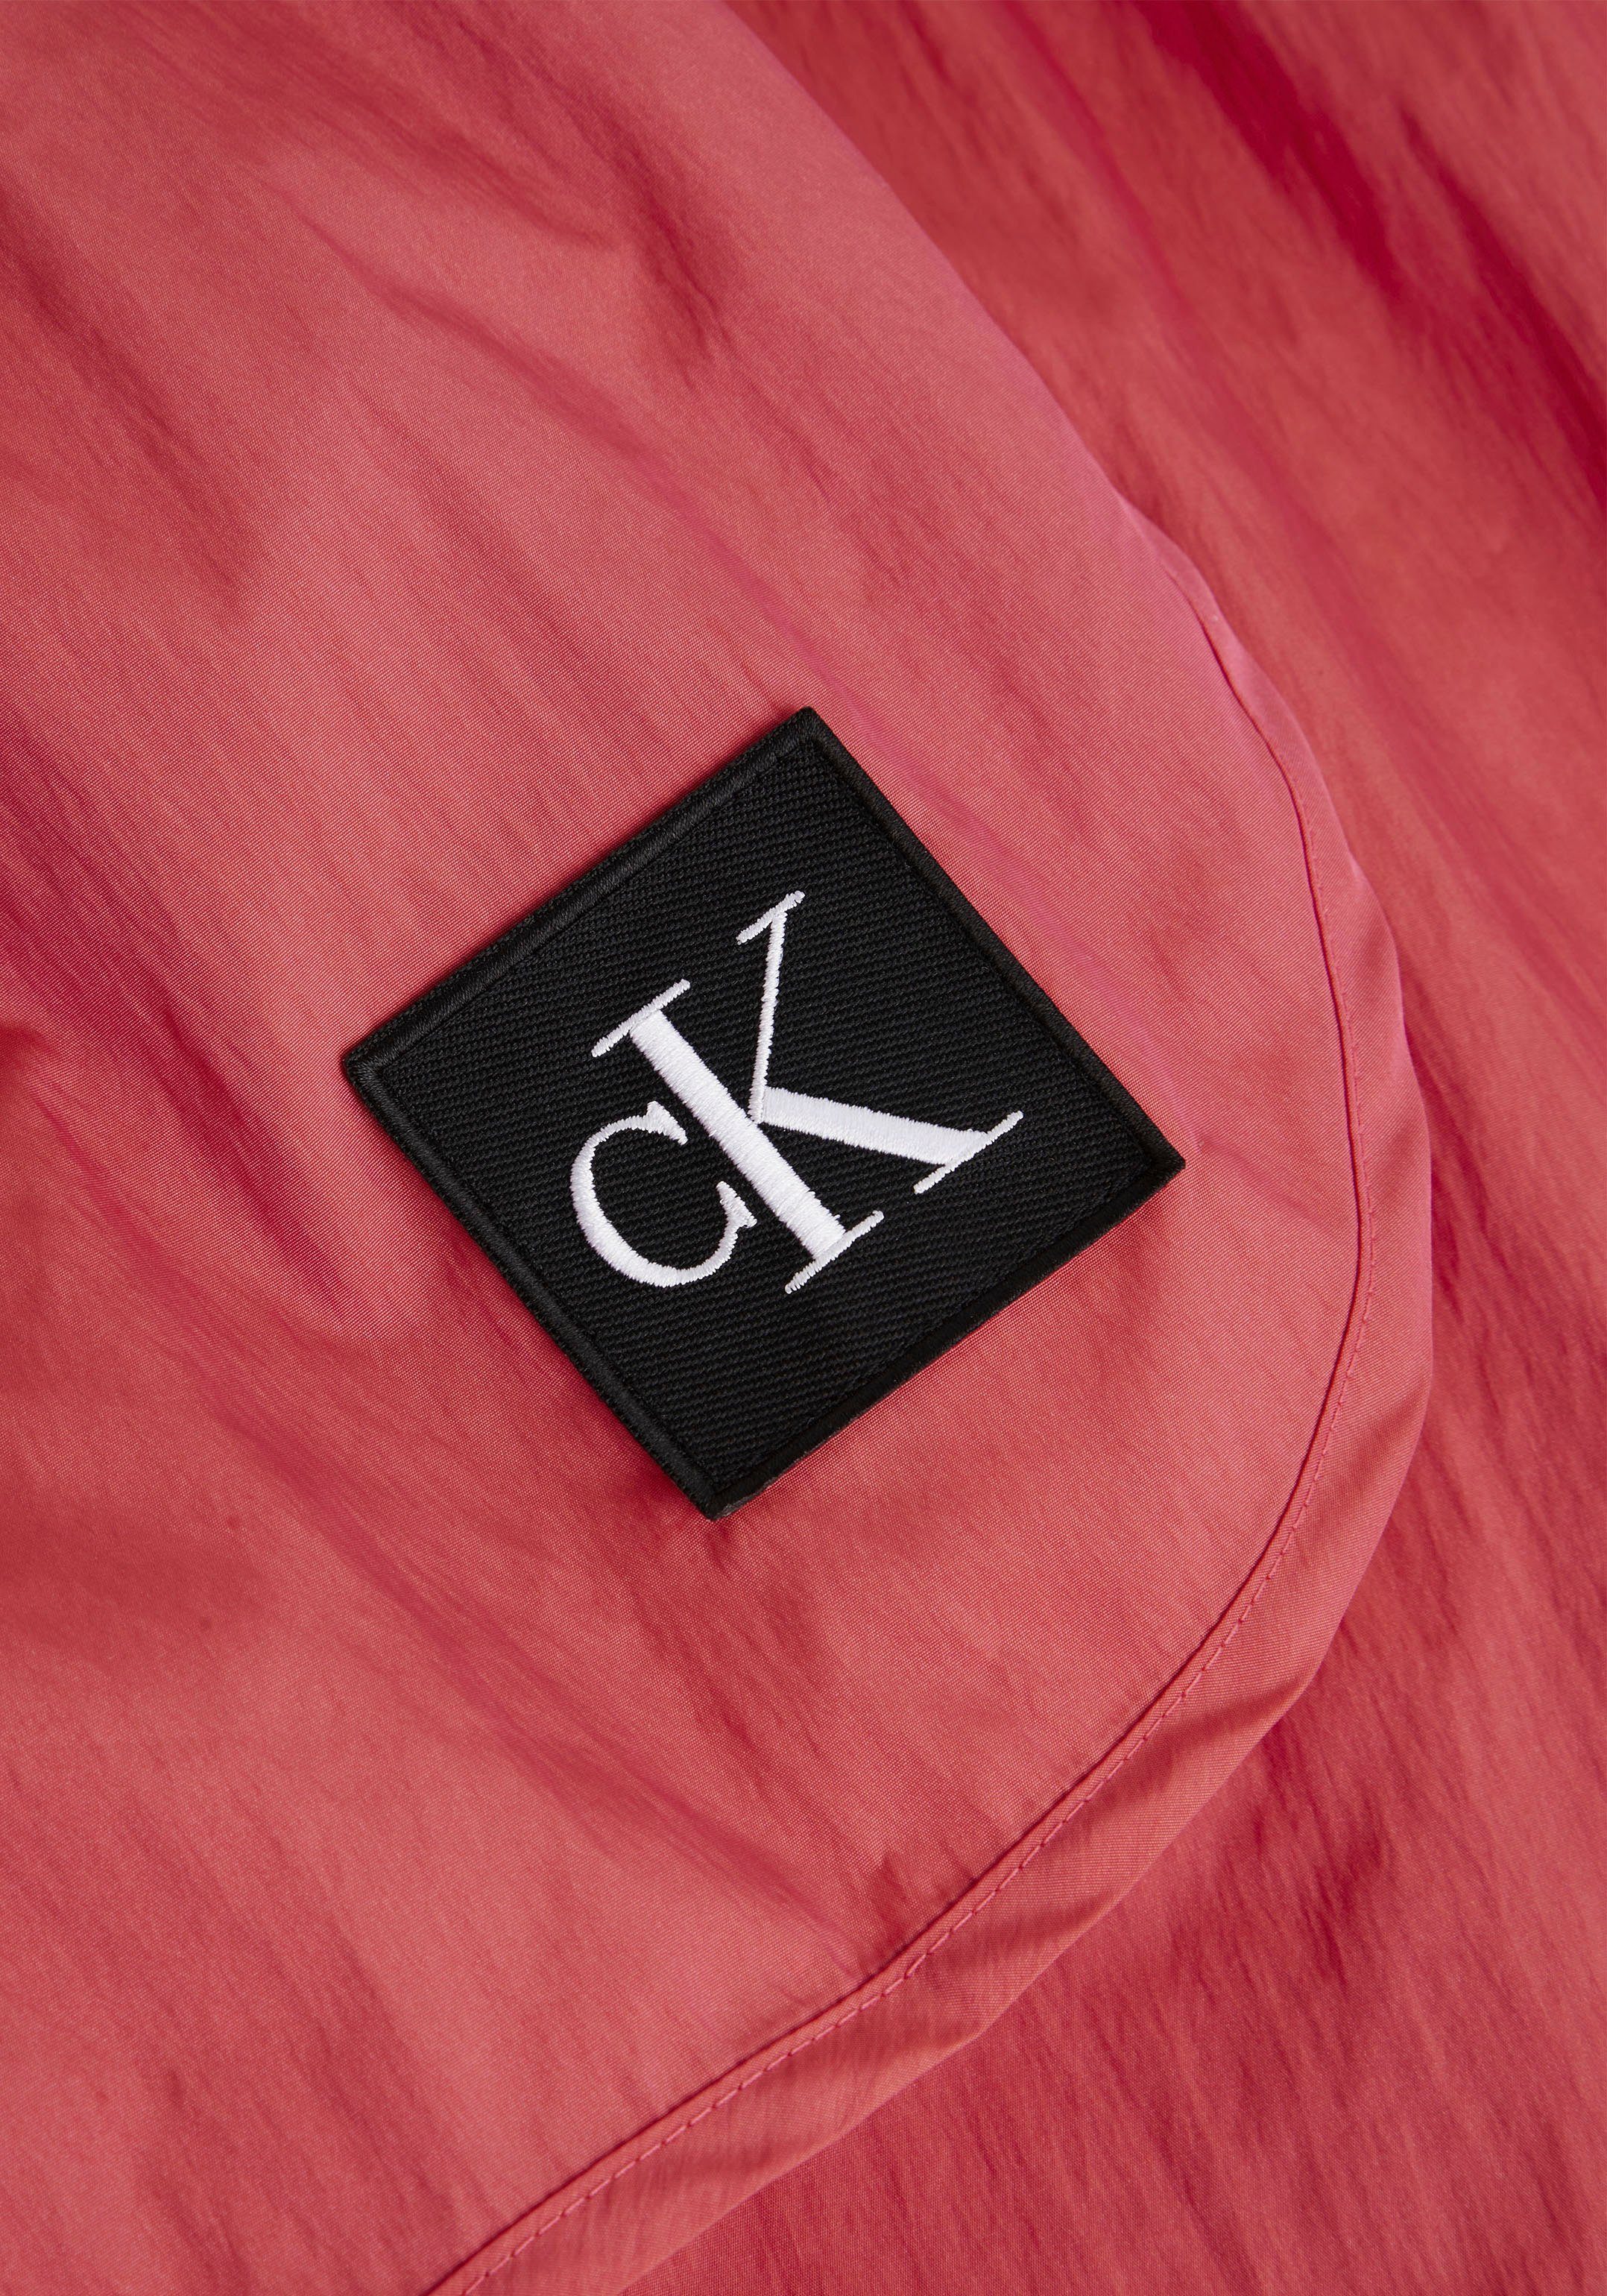 Pink-Flash SHORT Markenlabel Calvin Calvin Boxer-Badehose mit Klein Klein Swimwear RUNNER